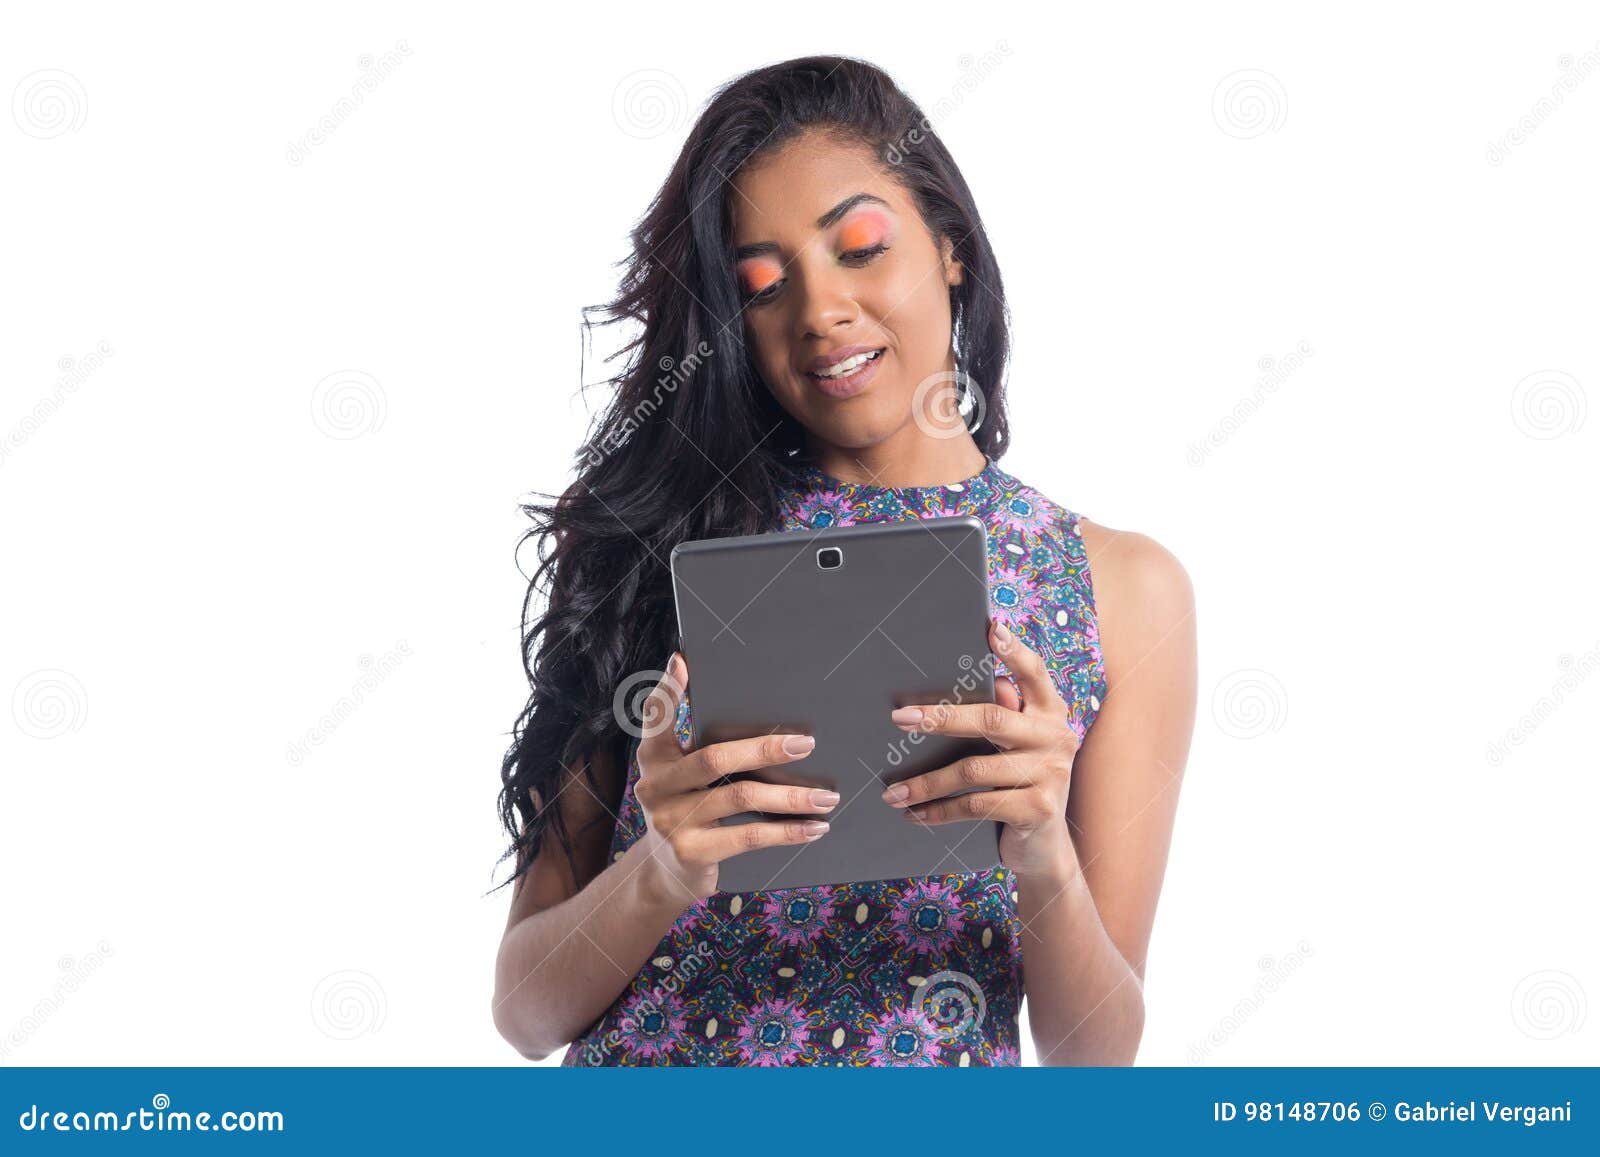 Young Woman Uses Digital Tablet Black Brazilian Girl